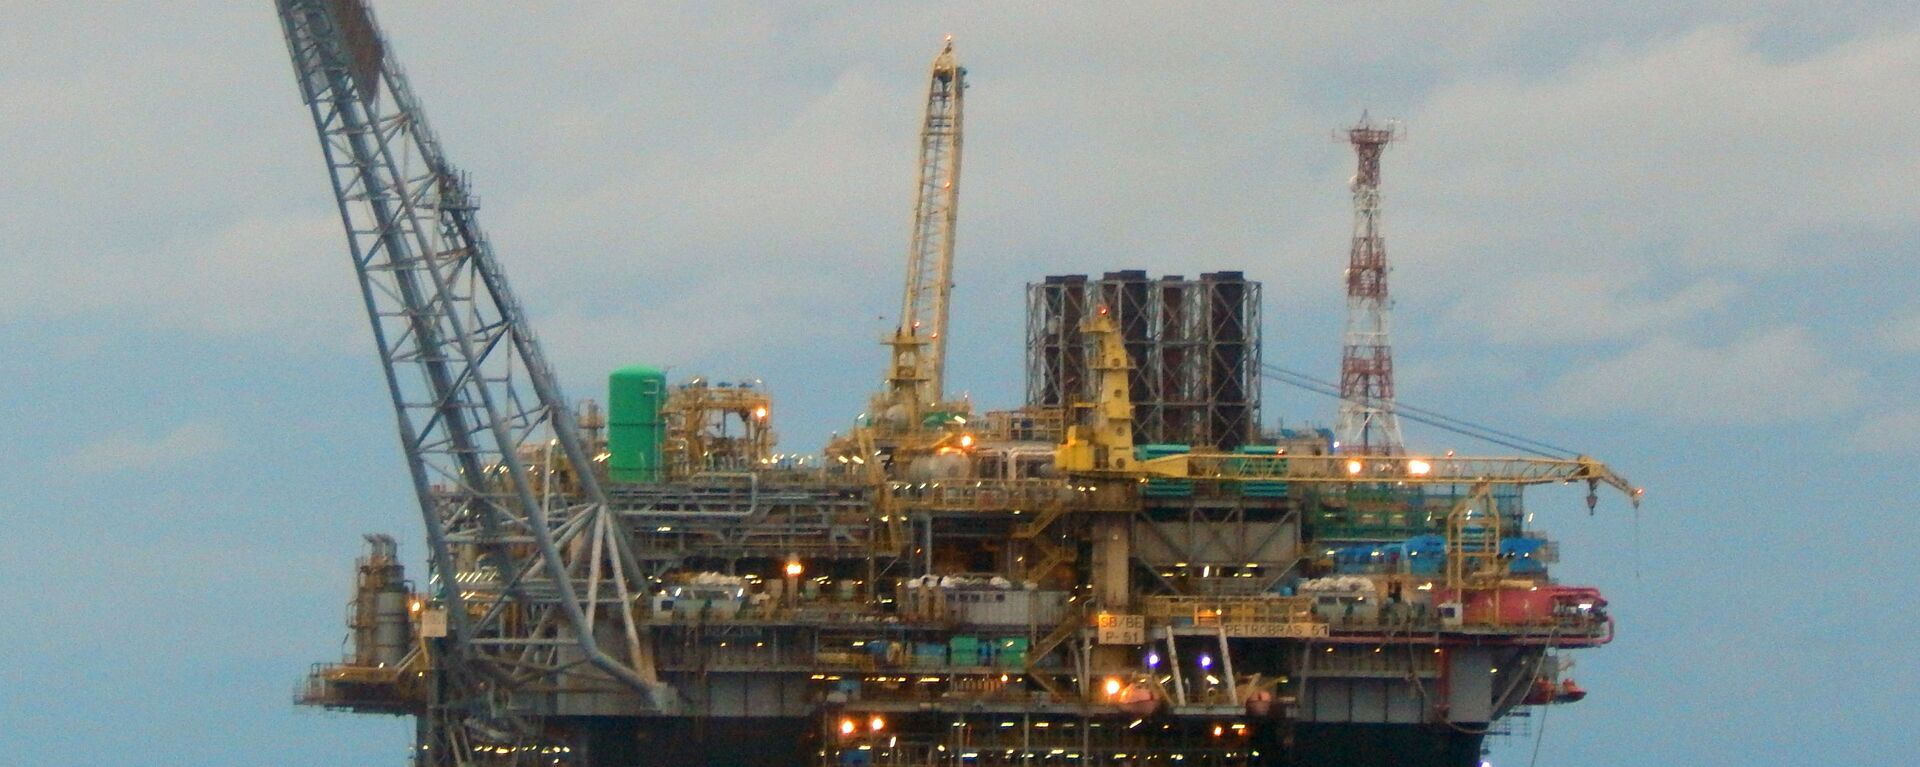 Plataforma de extração de petróleo da estatal Petrobras perto do litoral do estado de Espírito Santo, Brasil, dezembro de 2015 (foto de arquivo) - Sputnik Brasil, 1920, 29.12.2021